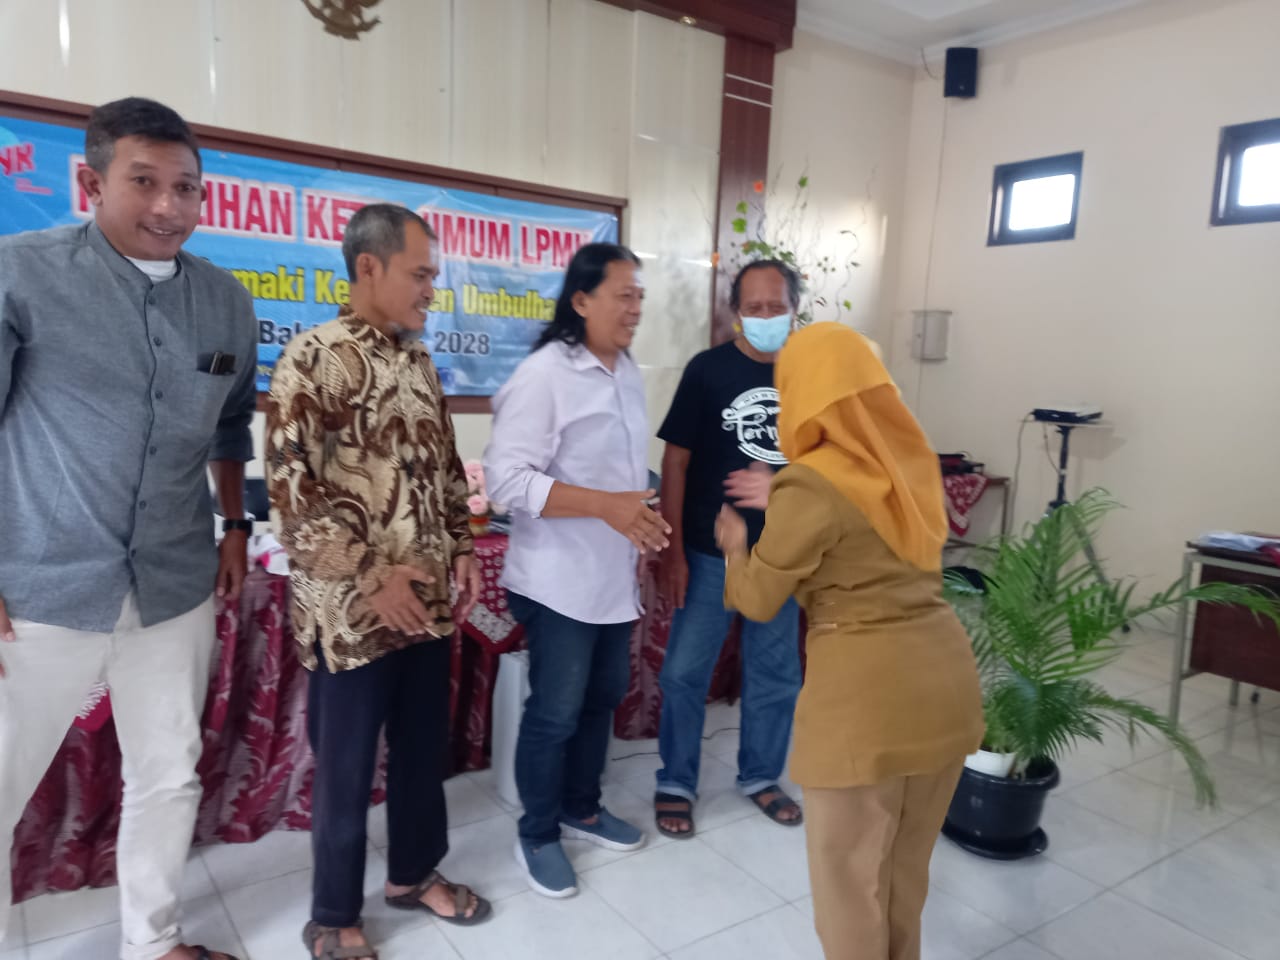 Mujiharto Unggul pada pemilihan Ketua LPMK Kelurahan Semaki